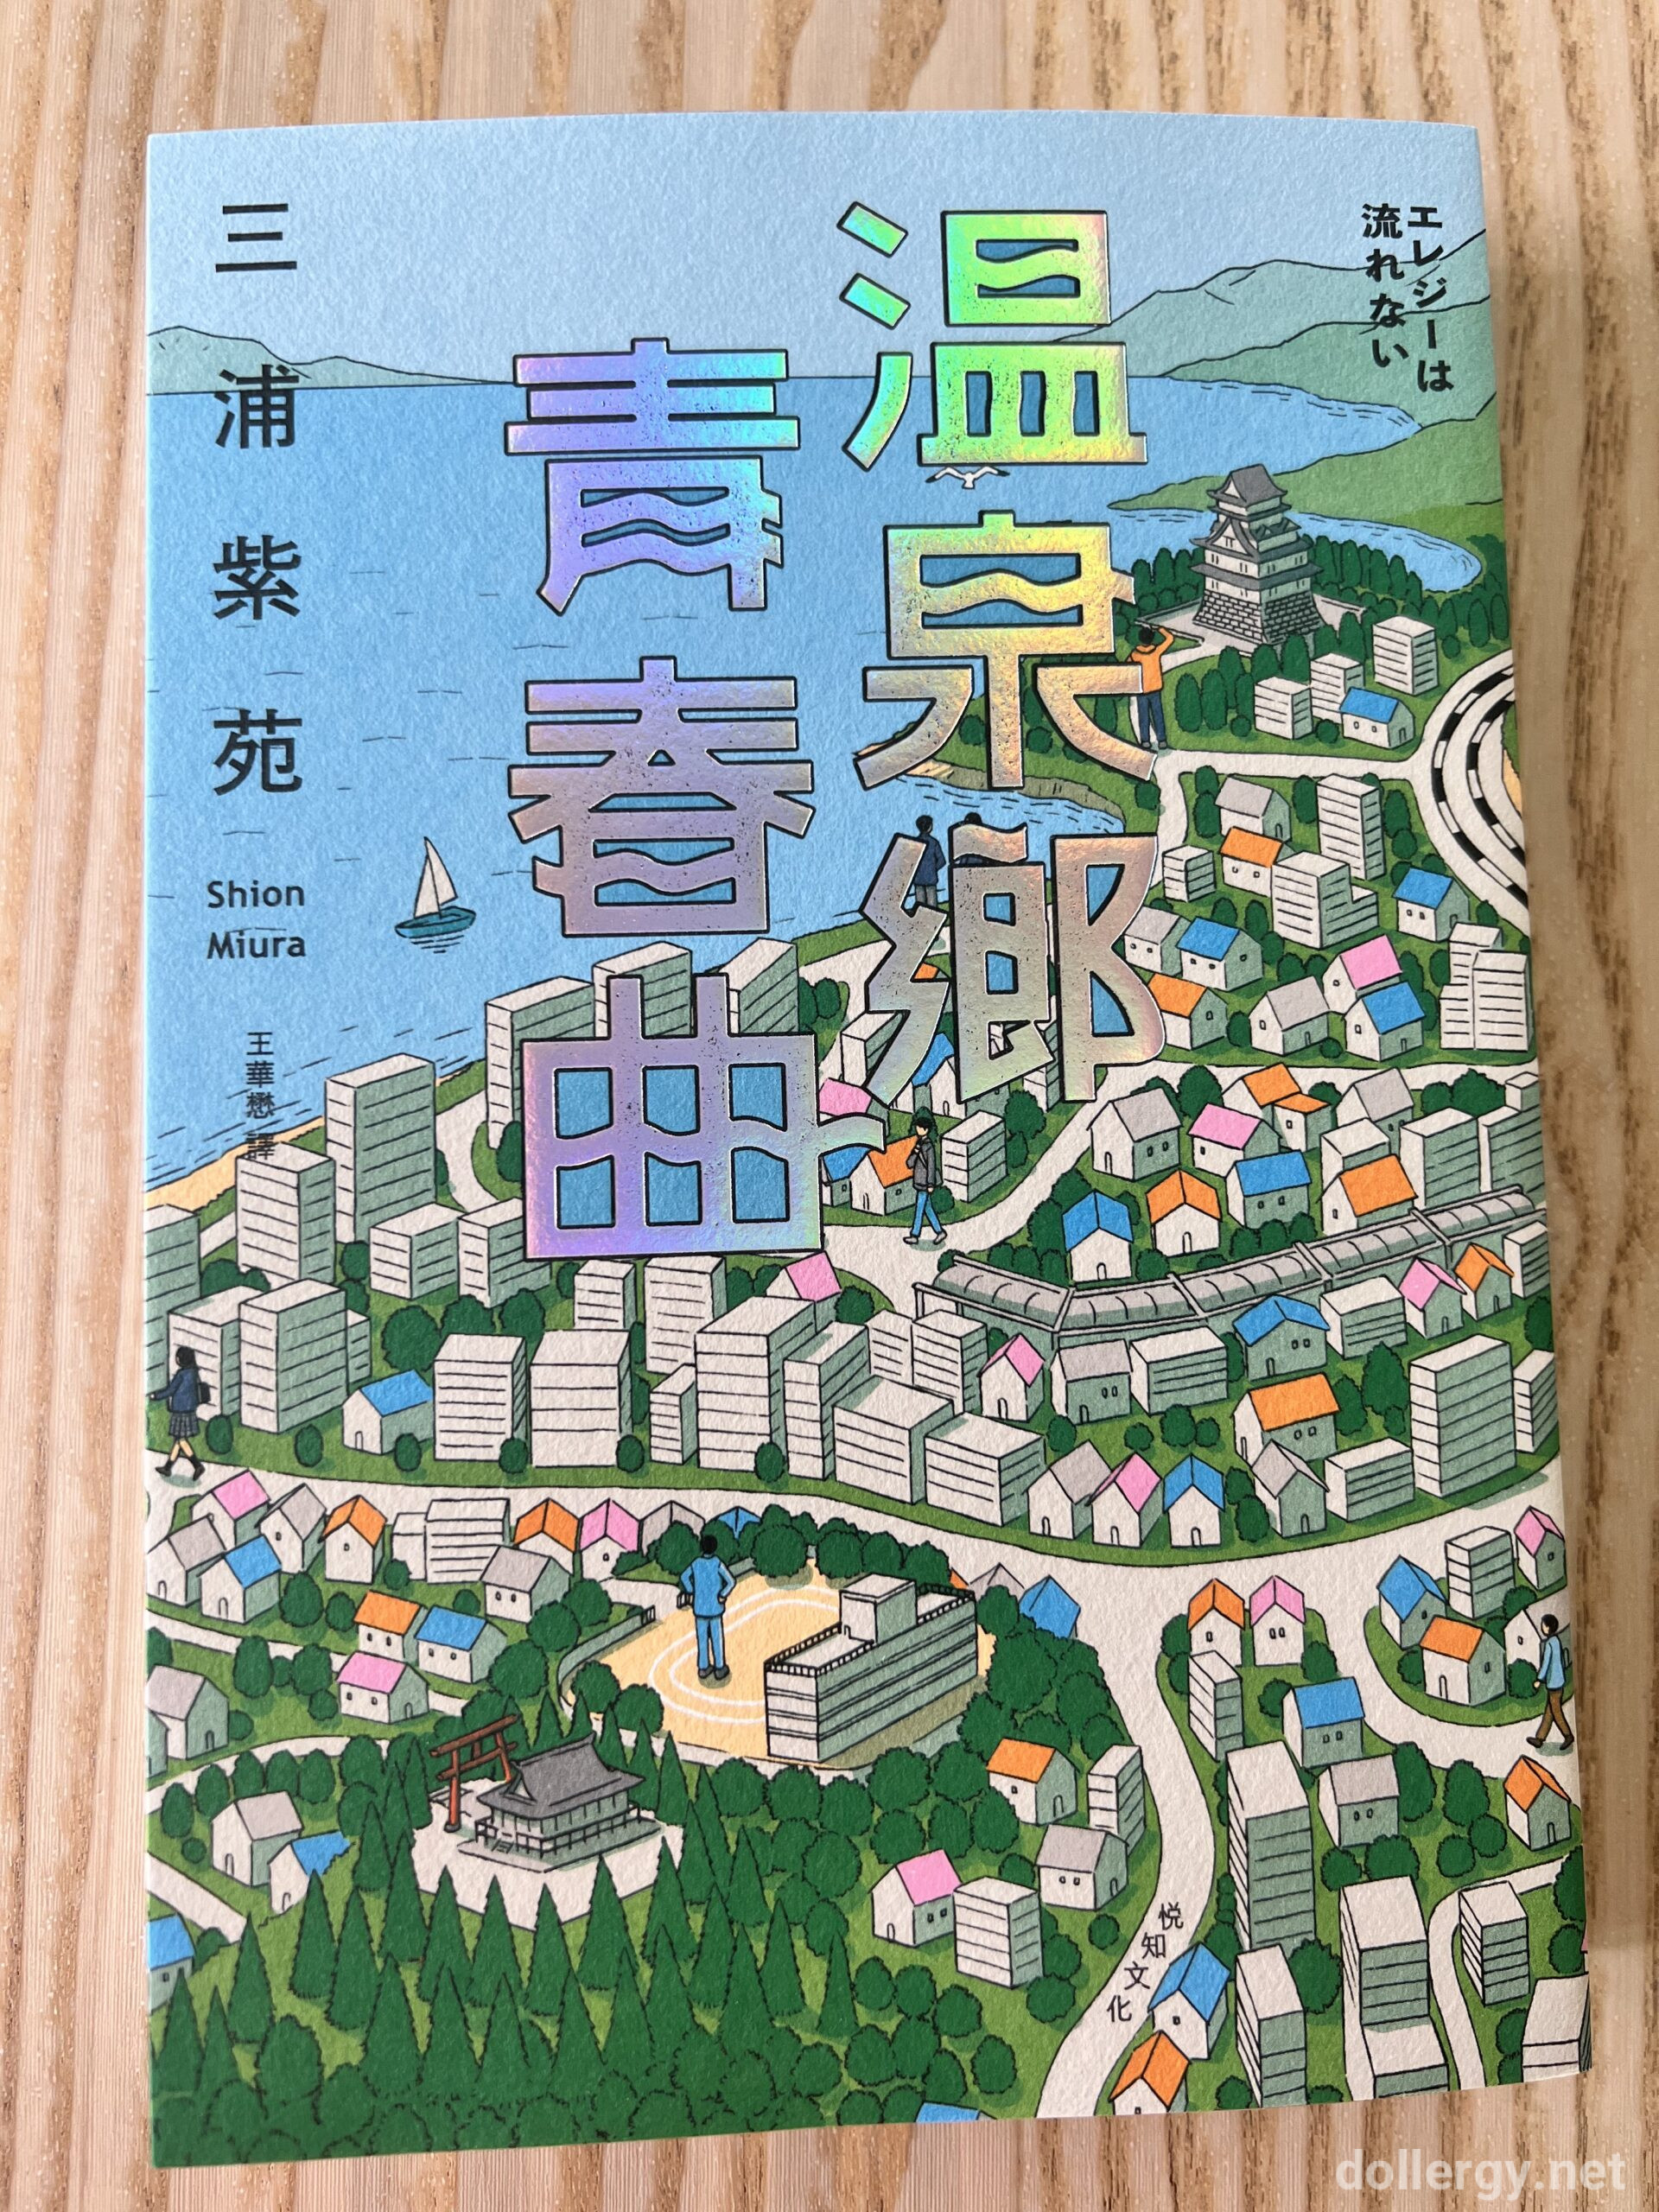 溫泉鄉青春曲 Book Cover